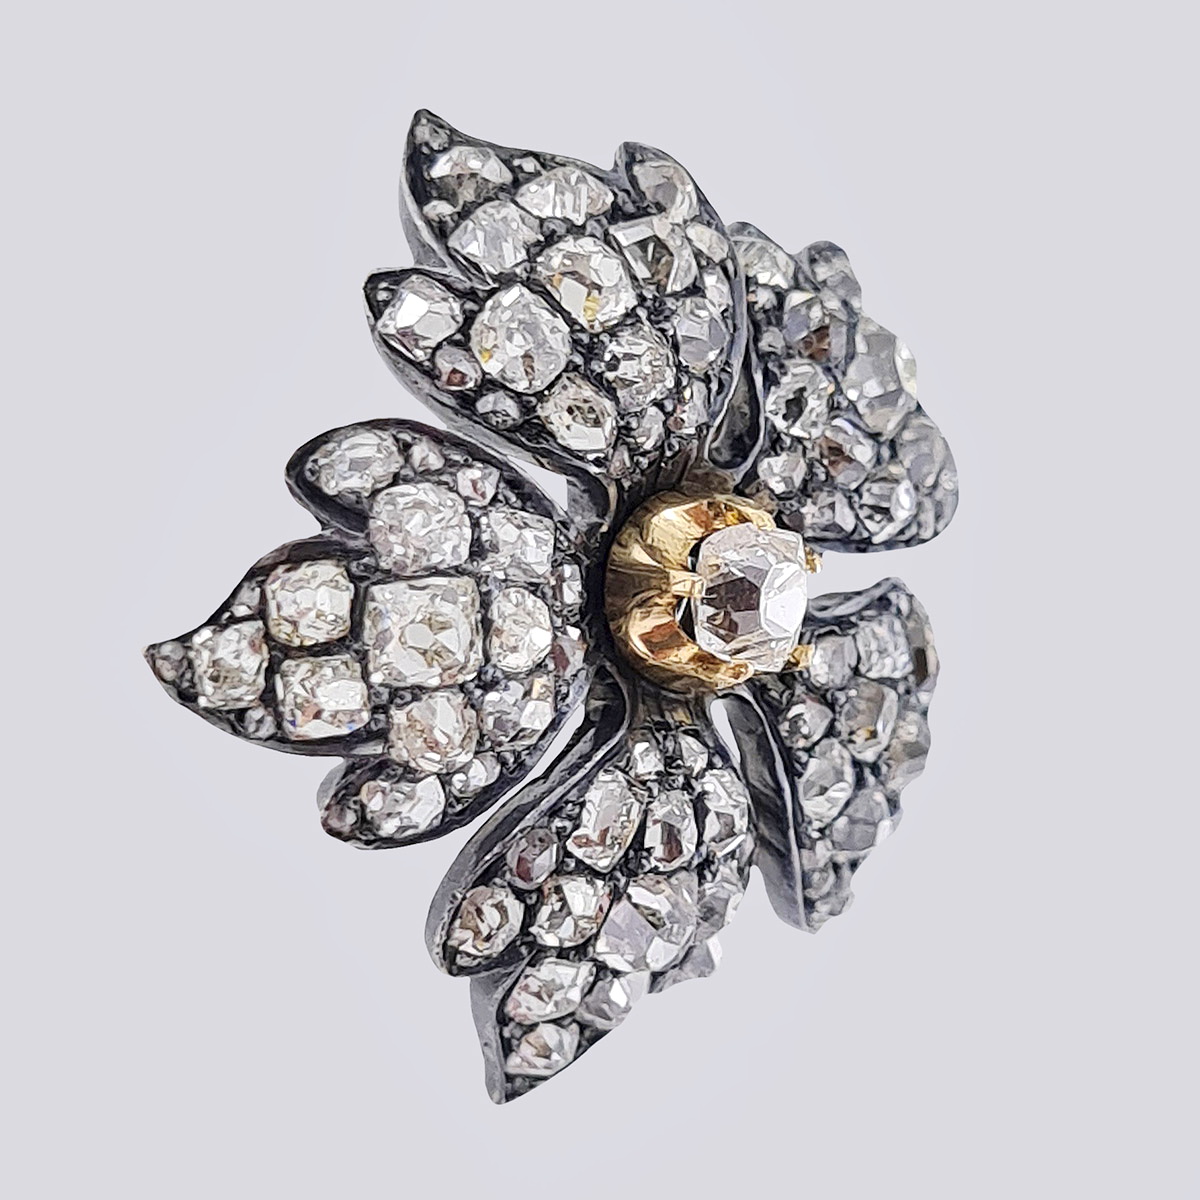 Подвеска «Цветок» антикварная золотая 56 пробы с бриллиантами старой огранки и алмазами